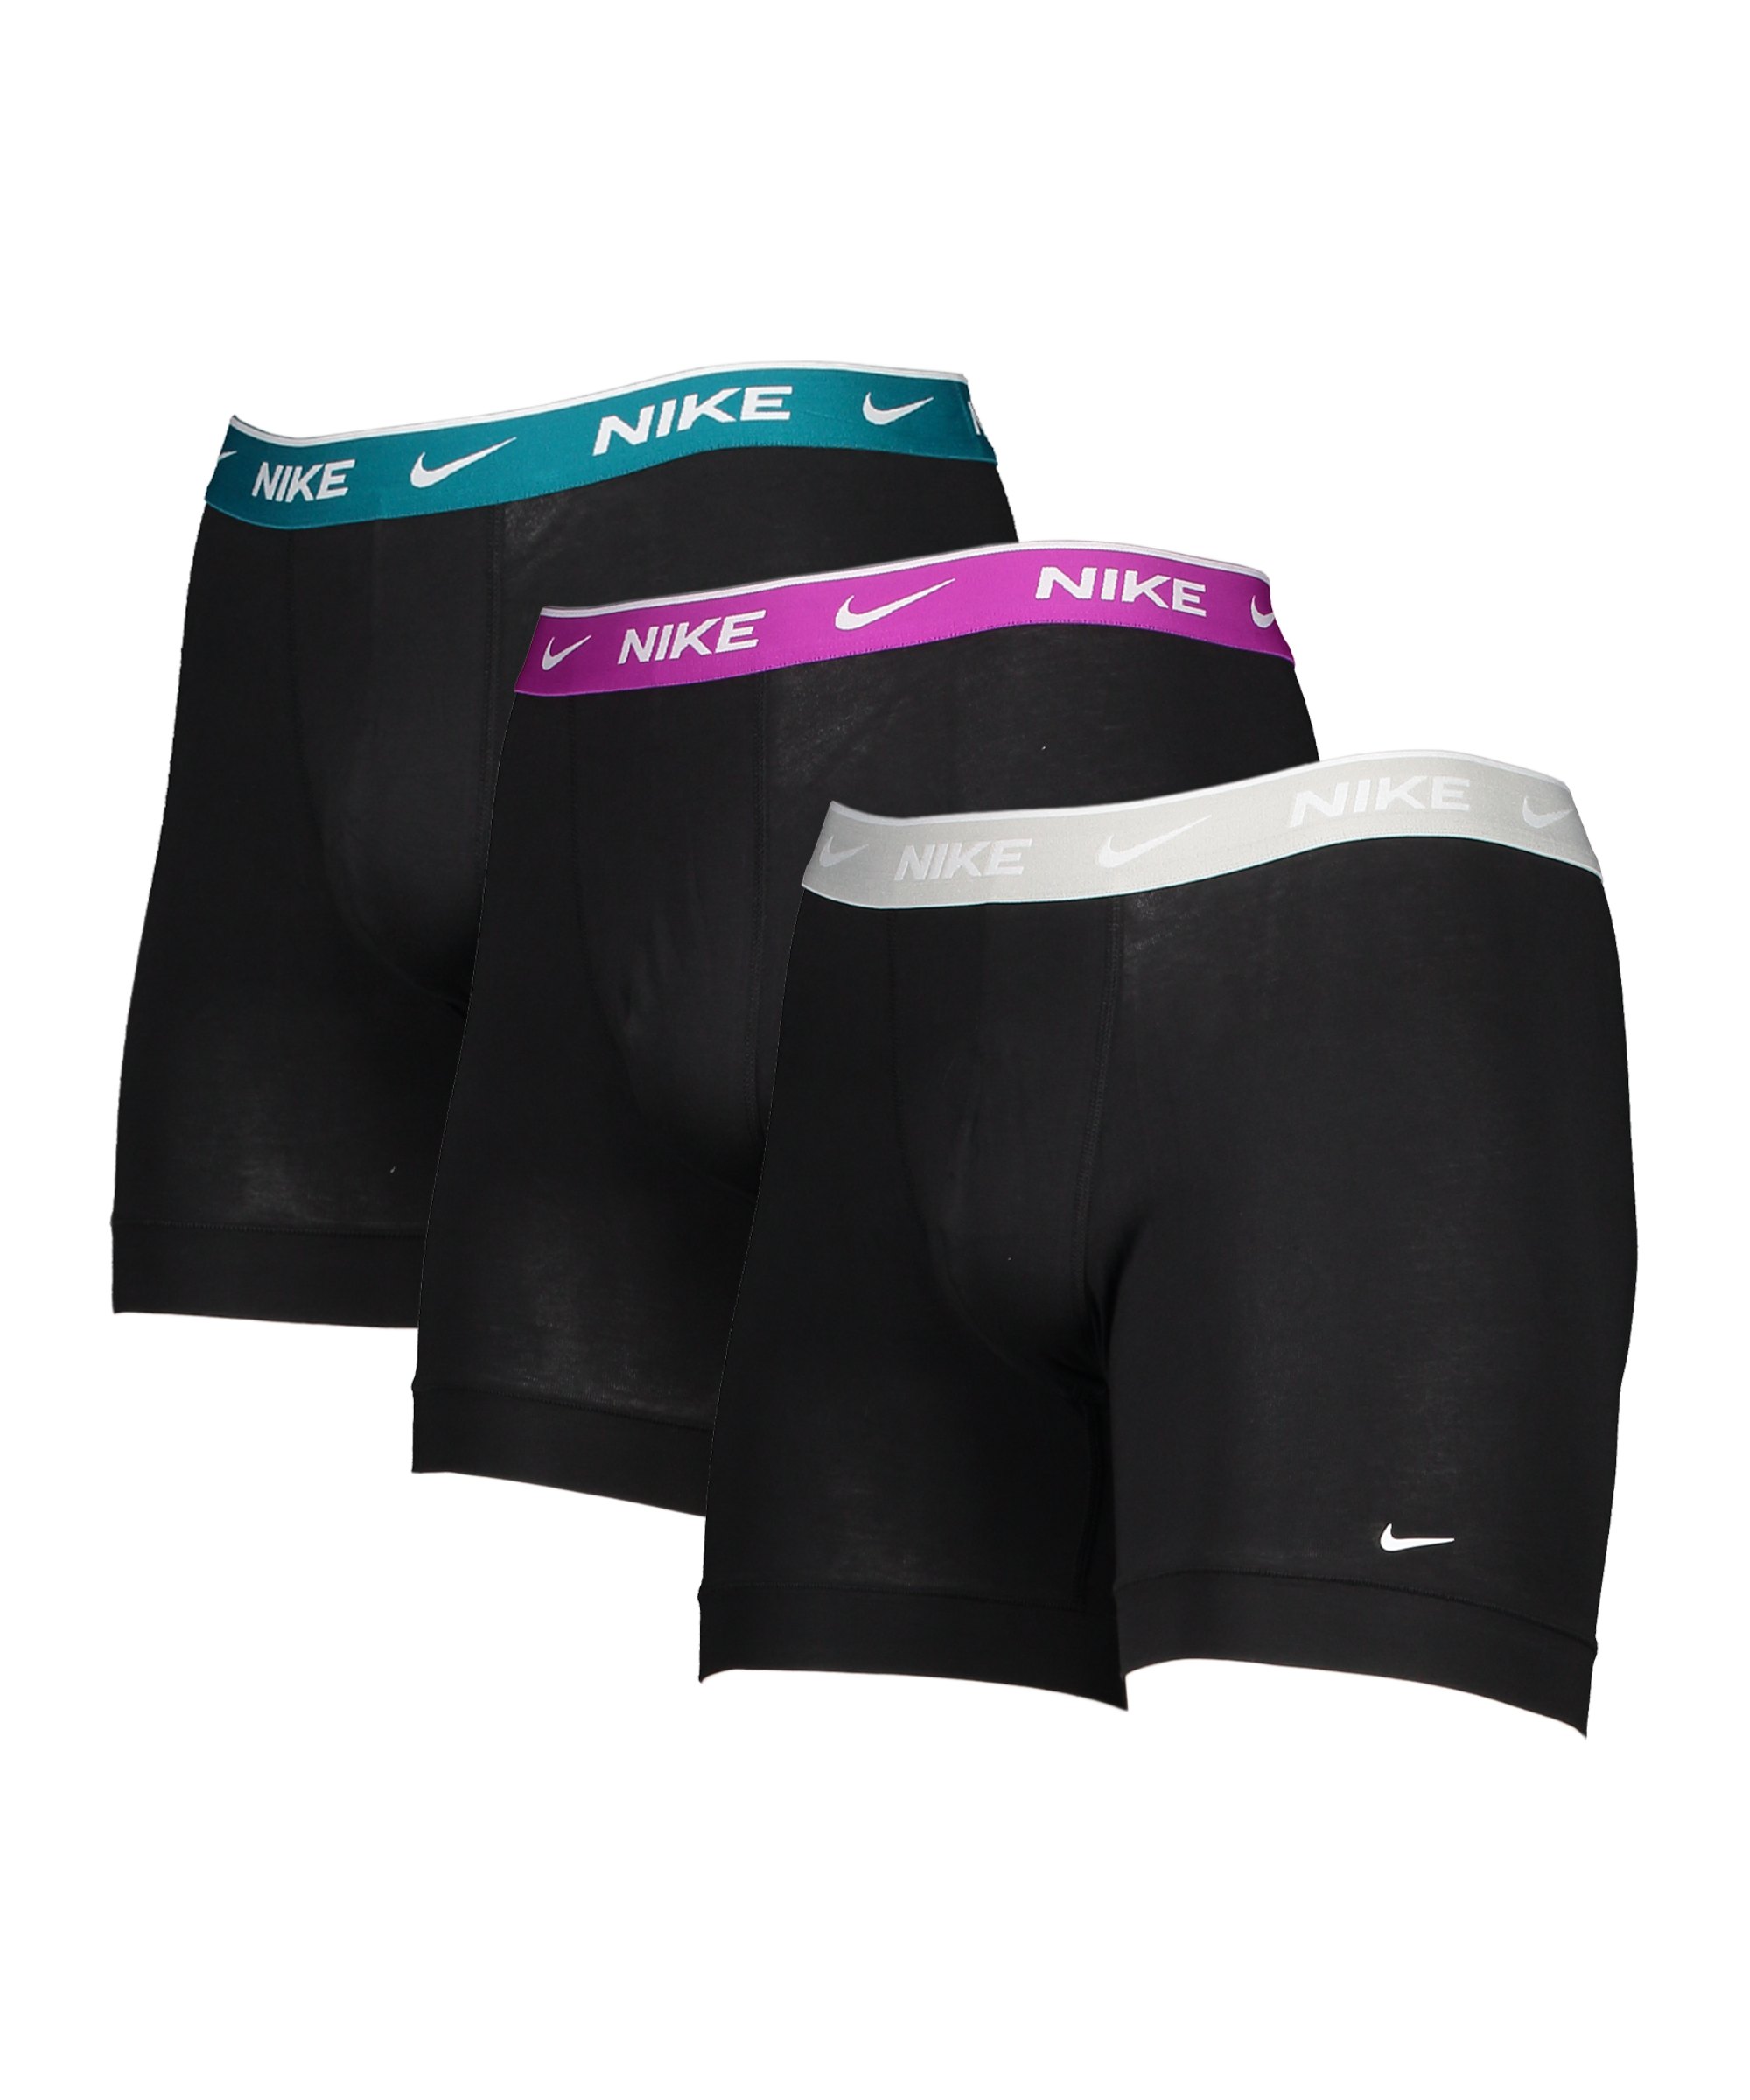 Nike Cotton Brief Boxershort 3er Pack F5IZ - schwarz